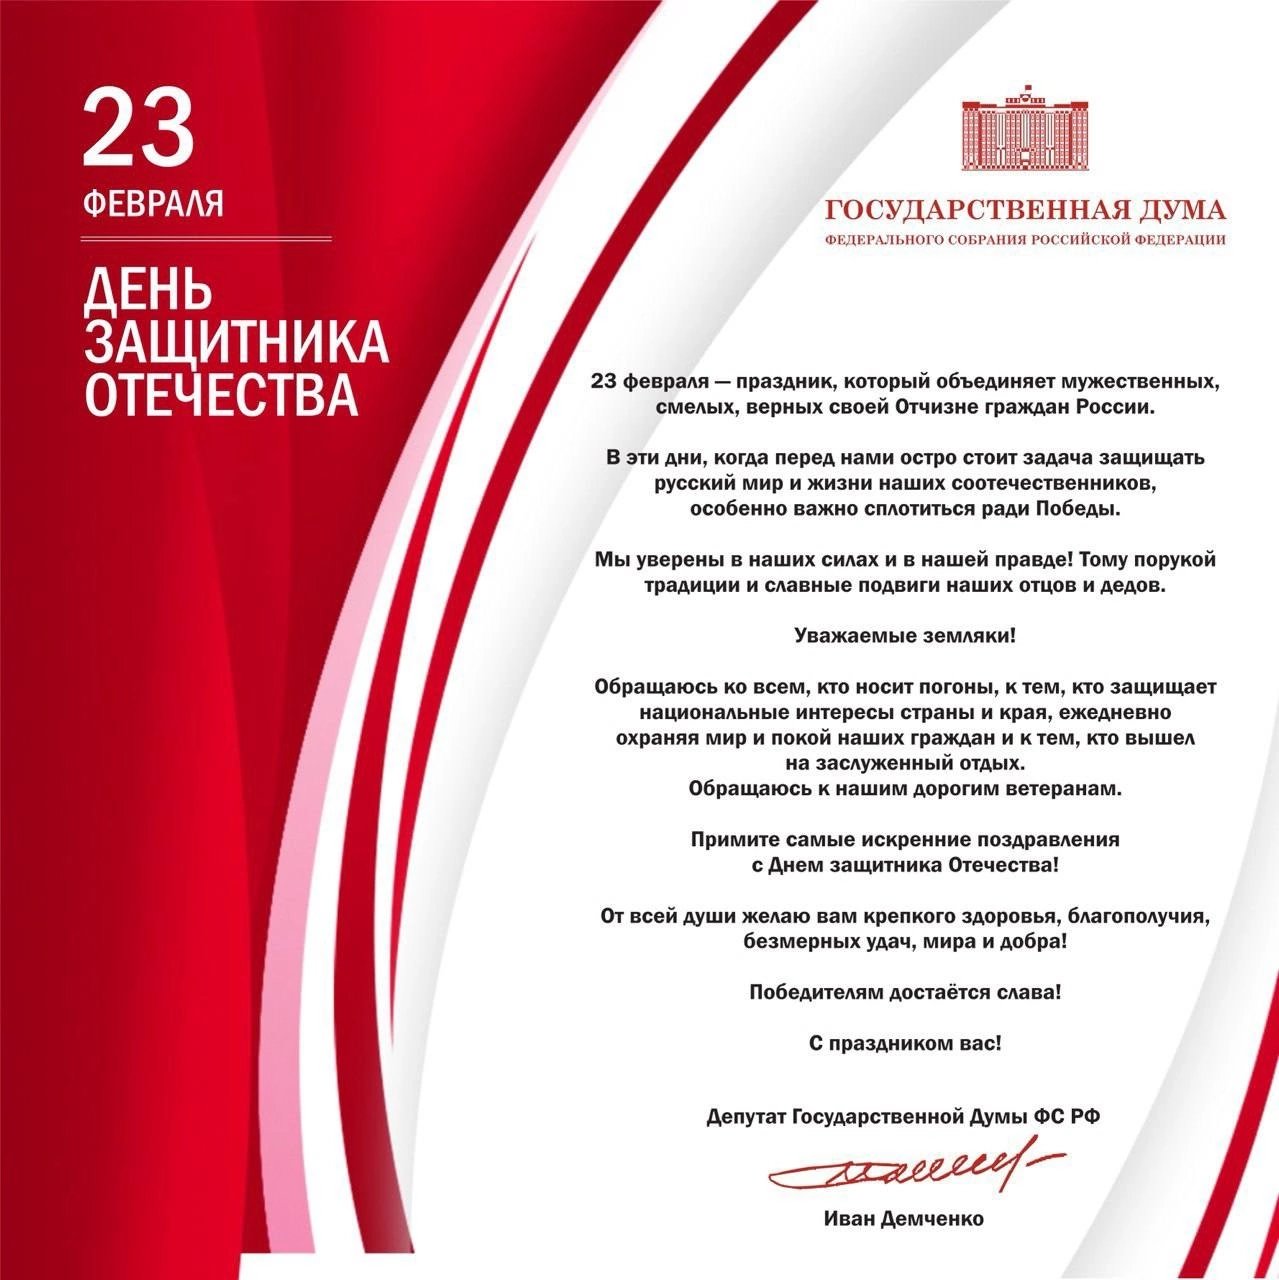 Депутат Госдумы Иван Иванович Демченко поздравил своих земляков с Днем Защитника Отечества!